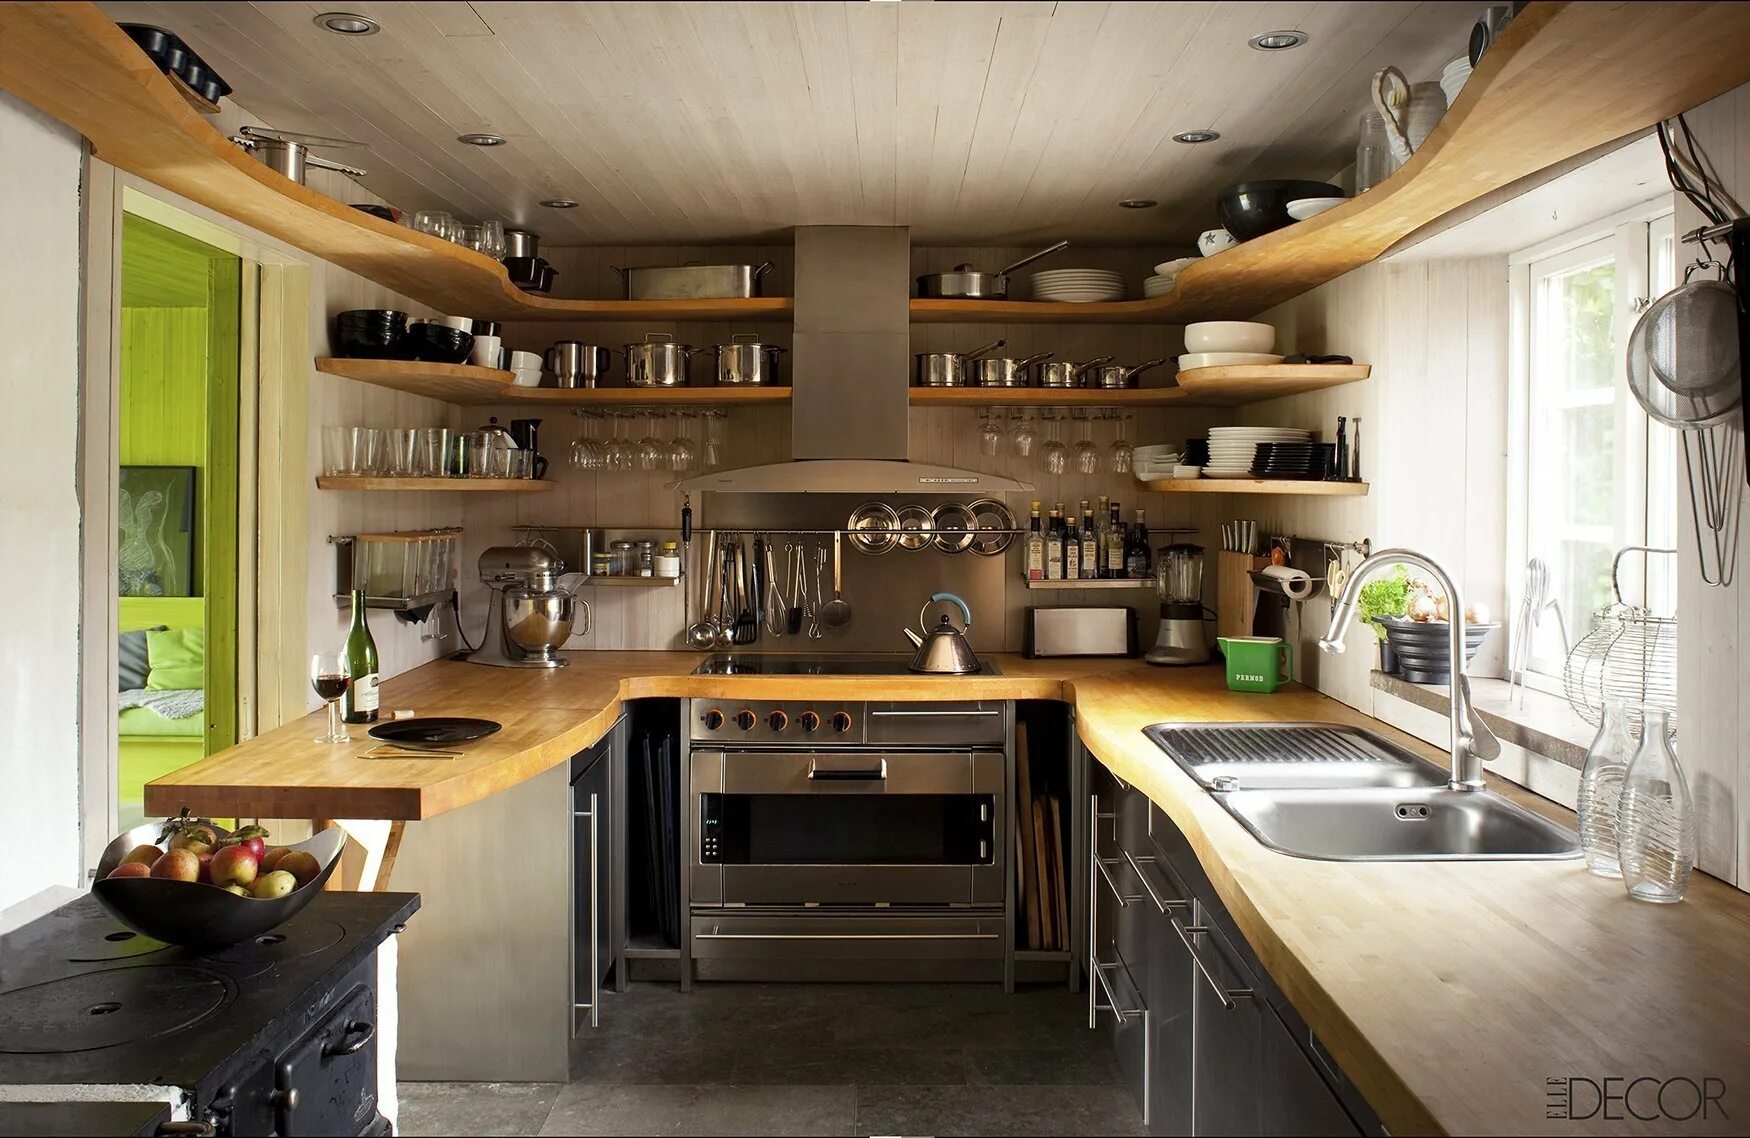 Открытая кухня дизайн. Необычные решения для кухни. Интересные идеи для кухни. Необычные маленькие кухни. Интерьер небольшой кухни в частном доме.